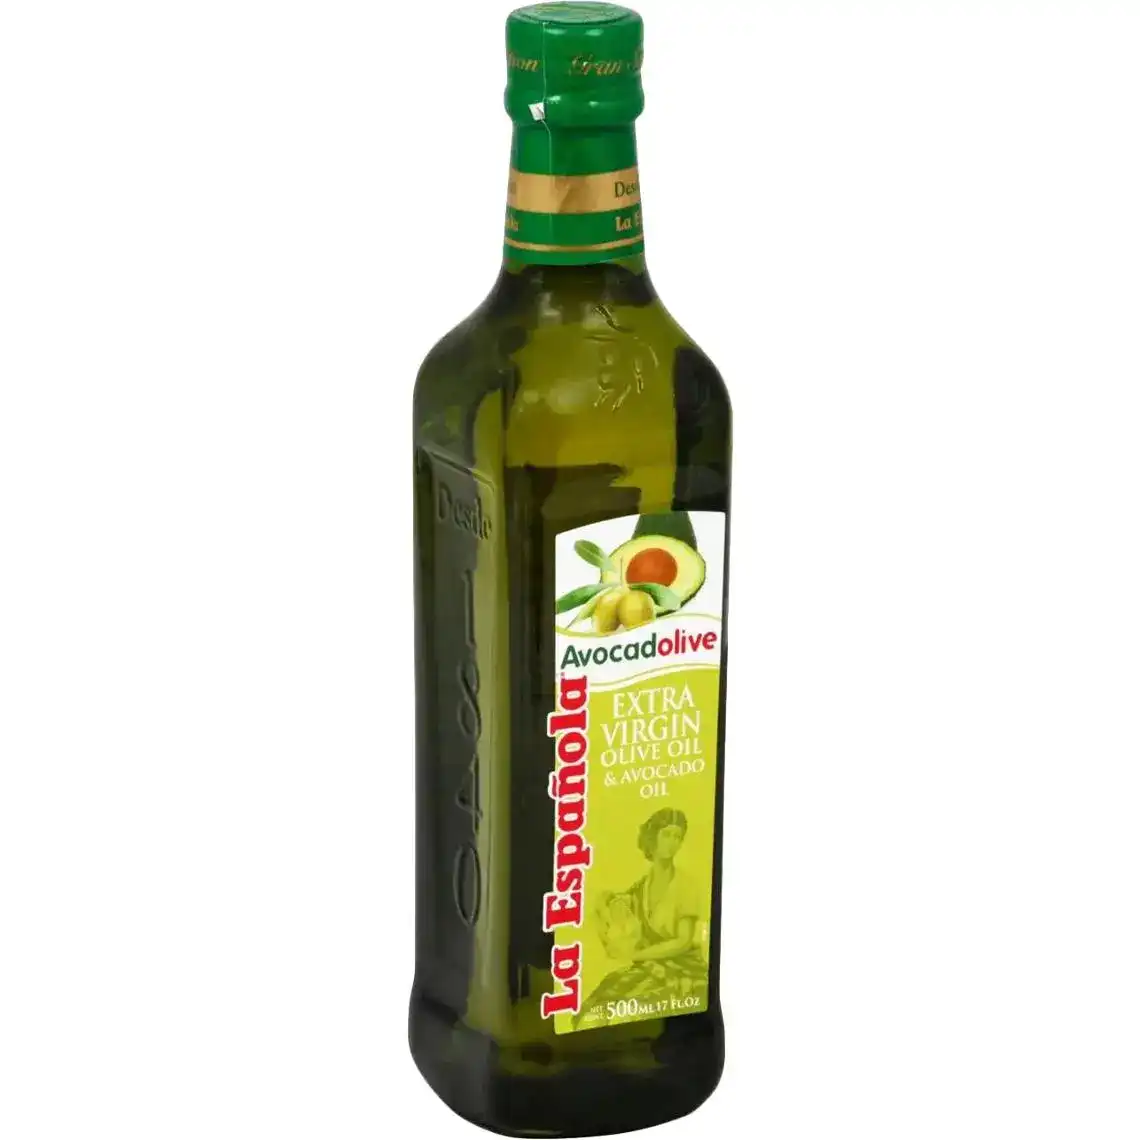 Олія оливкова та олія авокадо La Espanola нерафінована 500 мл